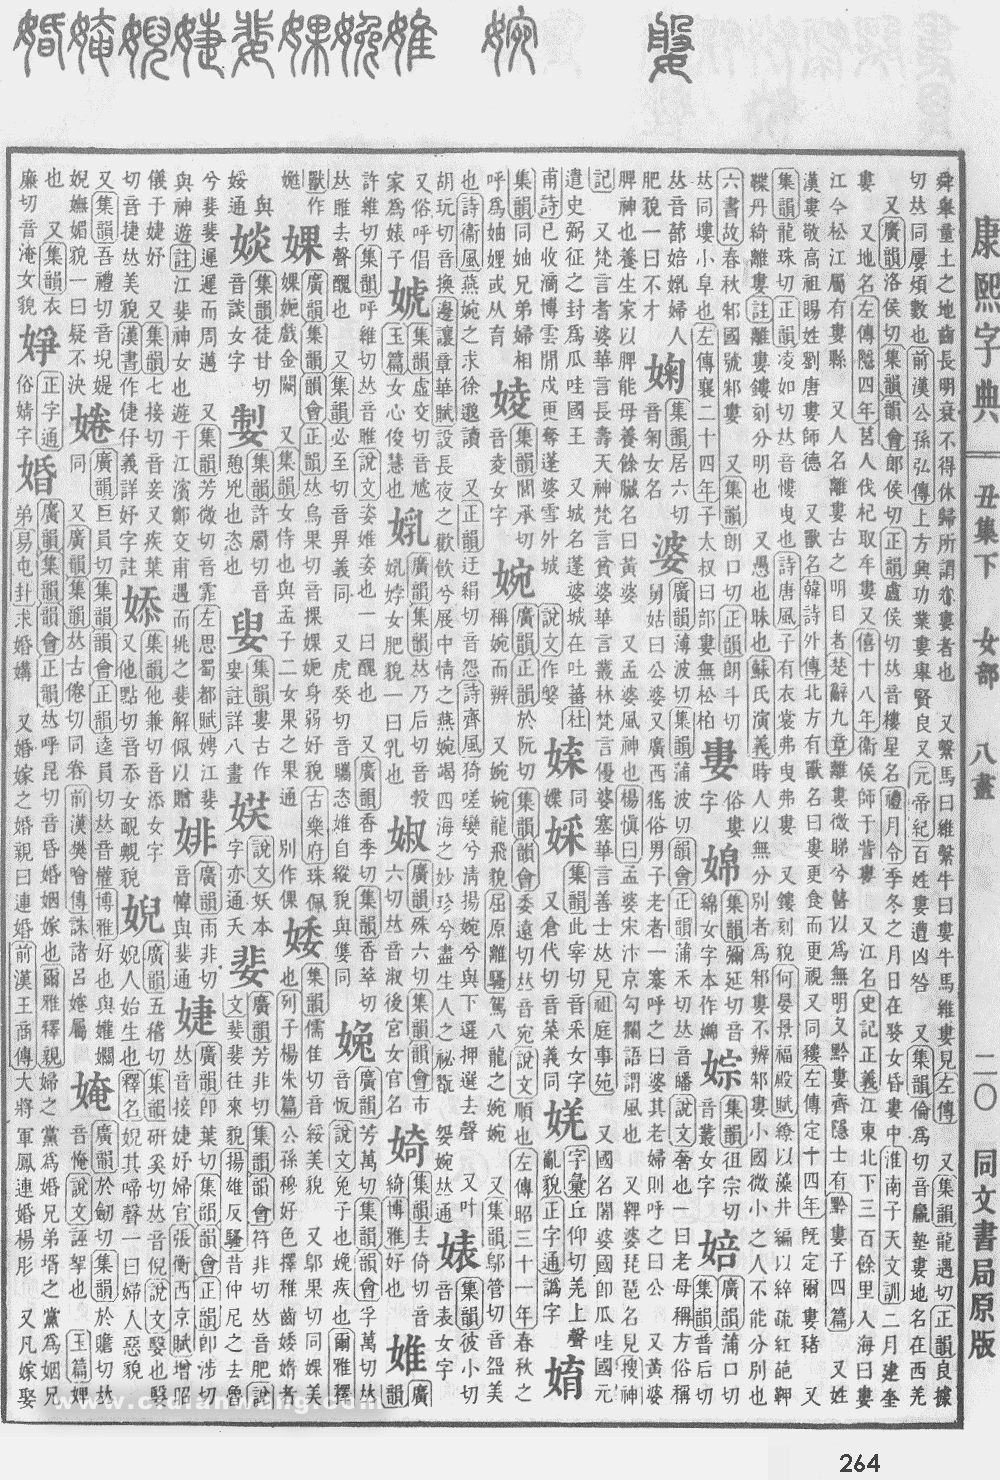 康熙字典掃描版第264頁